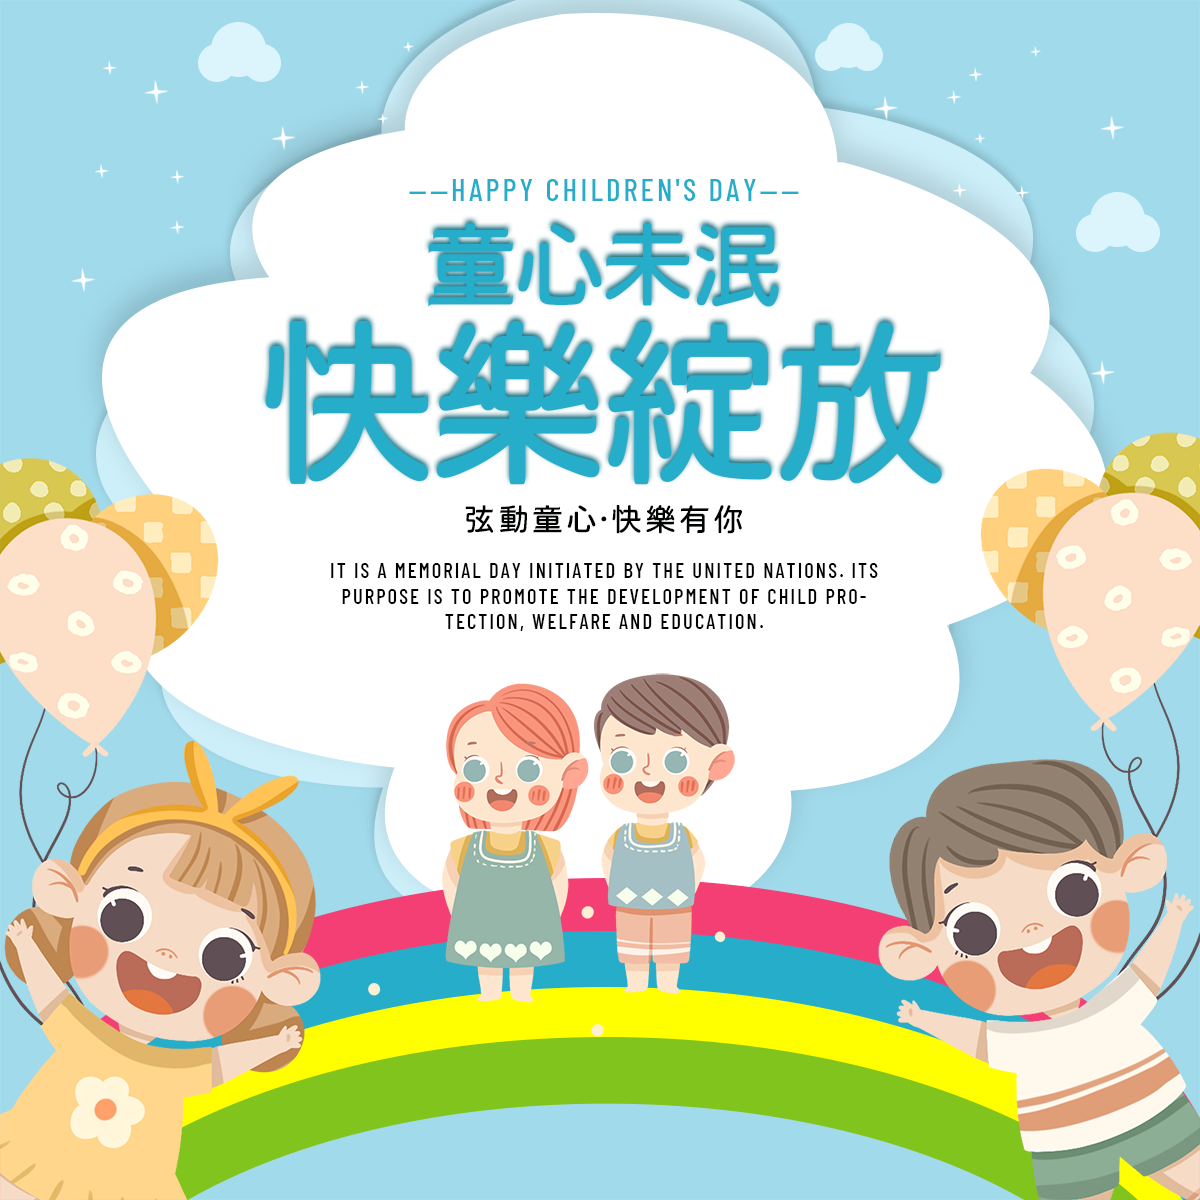 孩子彩虹气球白云可爱卡通台湾儿童节节日社交媒体广告图片